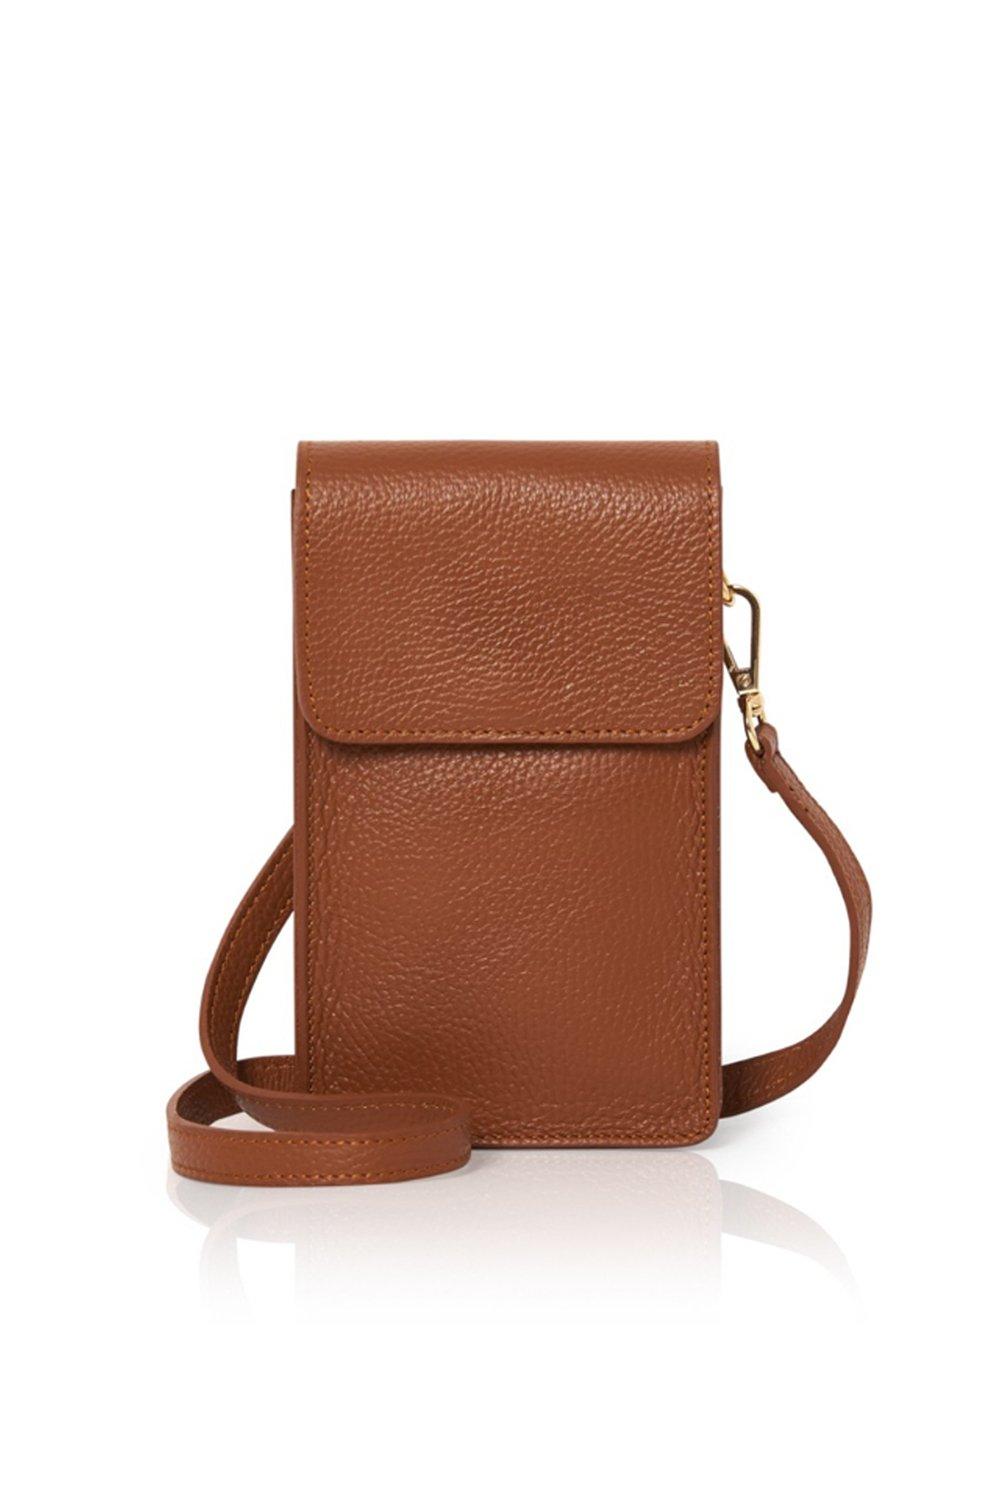 Маленькая сумка через плечо 'Vico' Betsy & Floss, коричневый фото